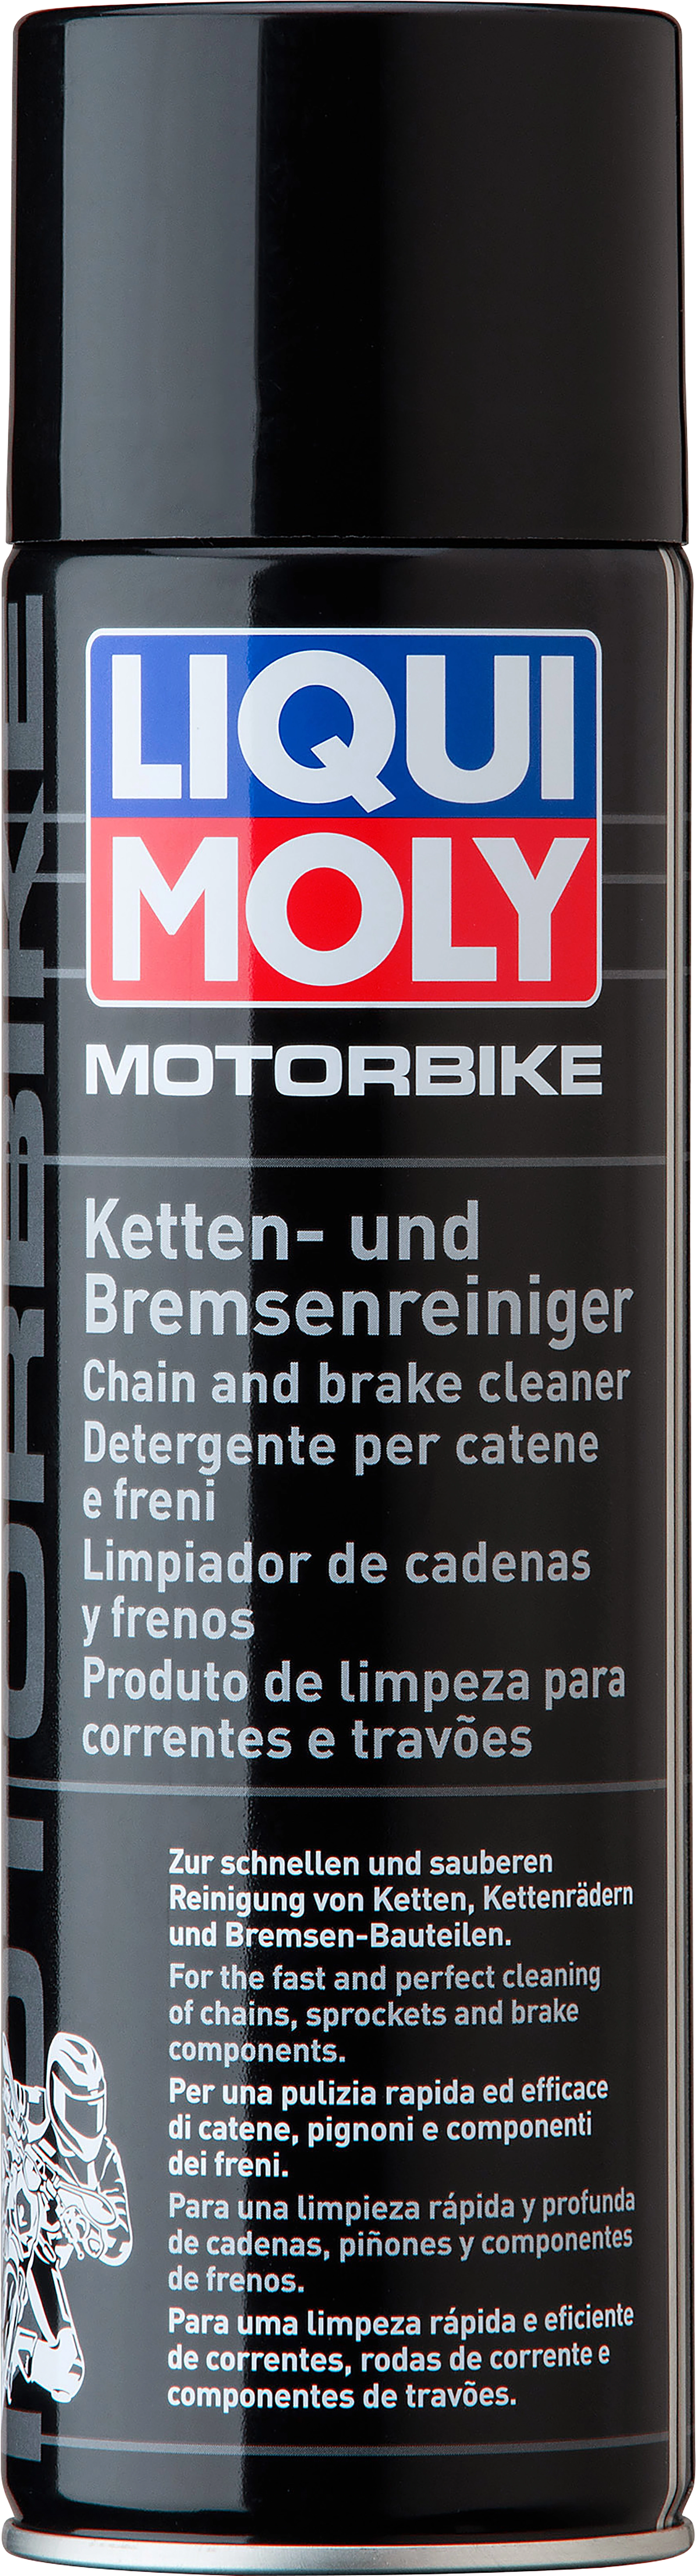 Liqui Moly Motorbike Ketten- und Bremsenreiniger 500 ml kaufen bei OBI